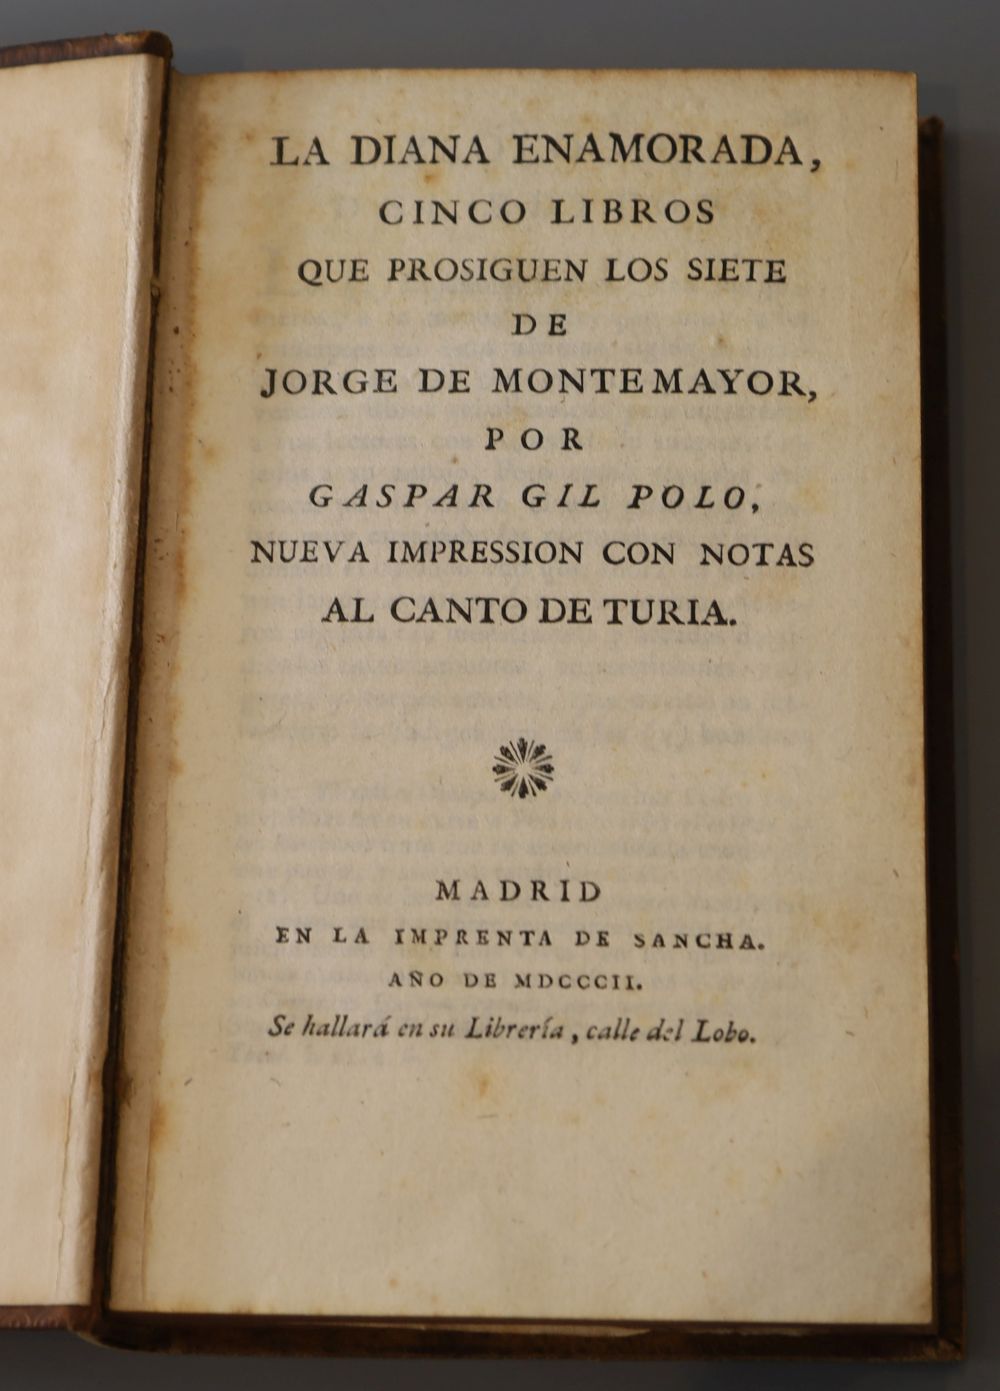 Polo, Gaspar Gil, 1516?-1591?. - La Diana Enamorada, calf, 8vo, Imprenta de Sancha, Madrid, 1802